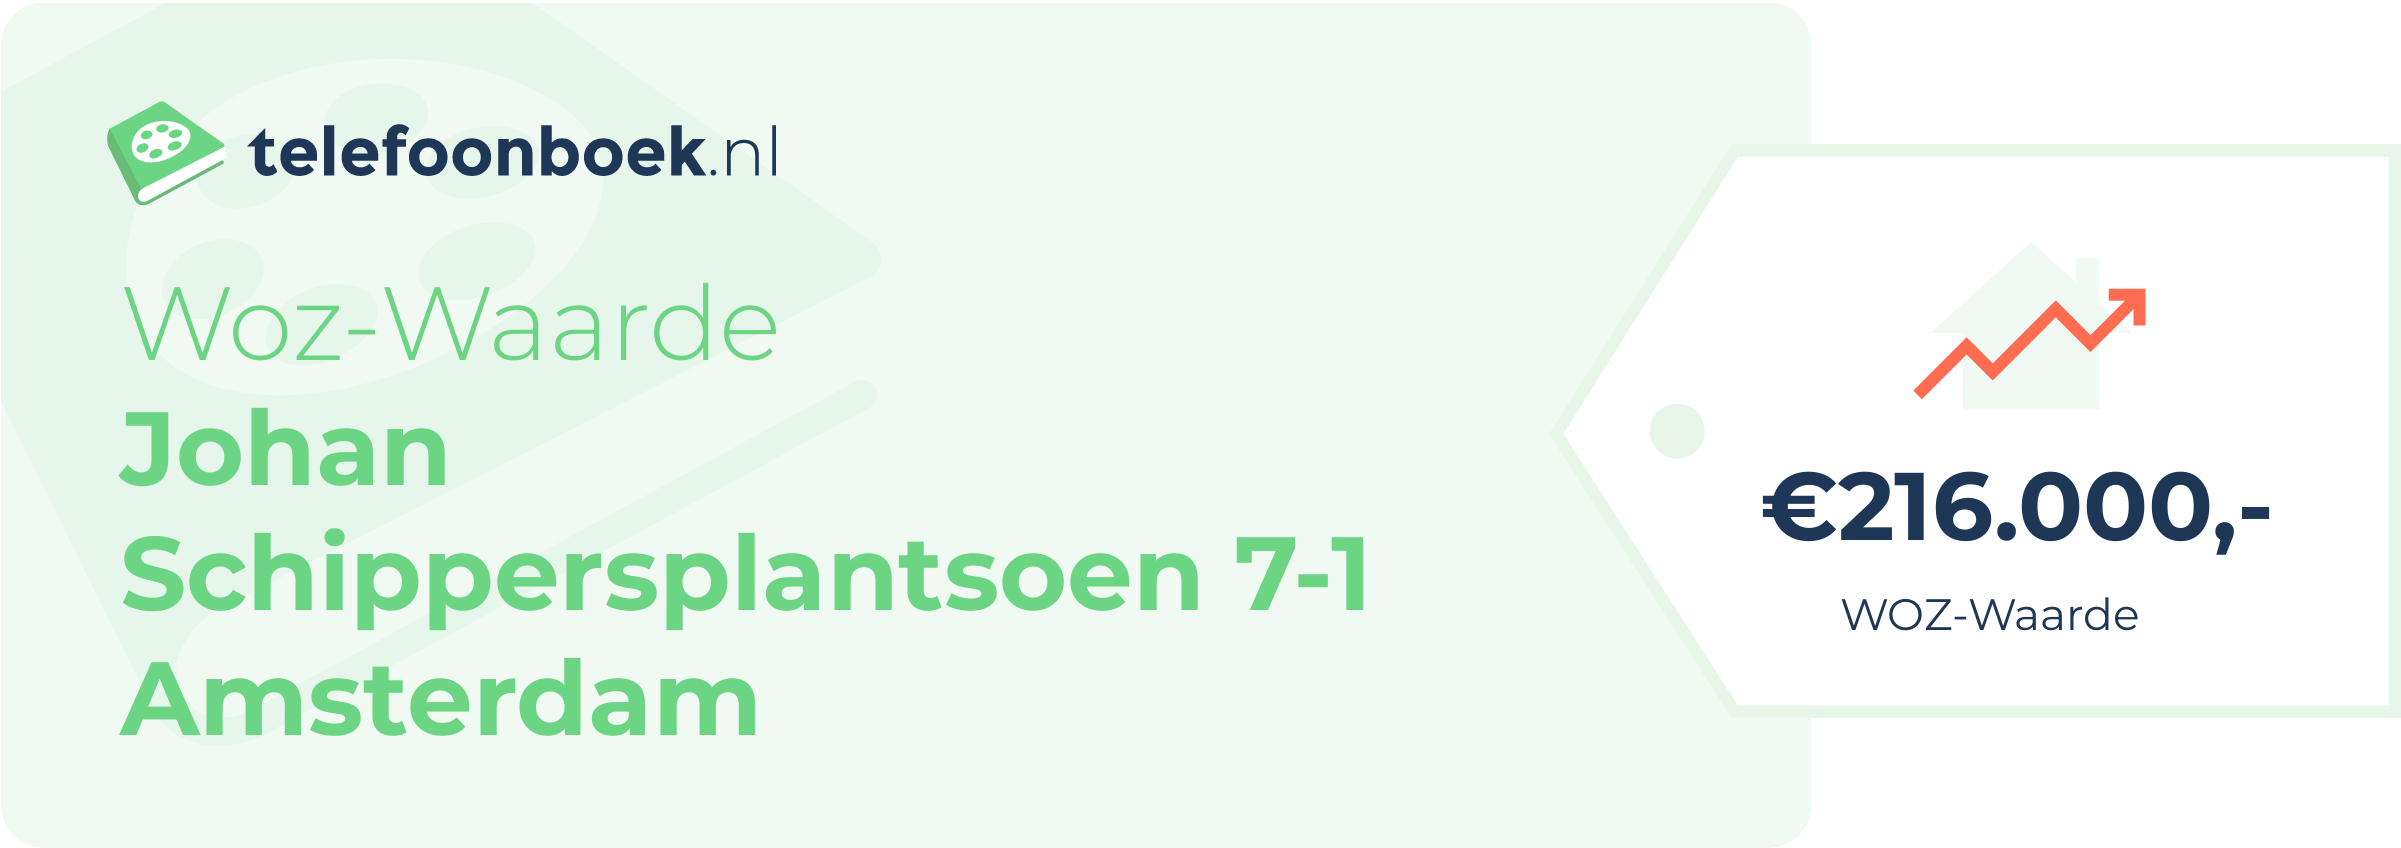 WOZ-waarde Johan Schippersplantsoen 7-1 Amsterdam